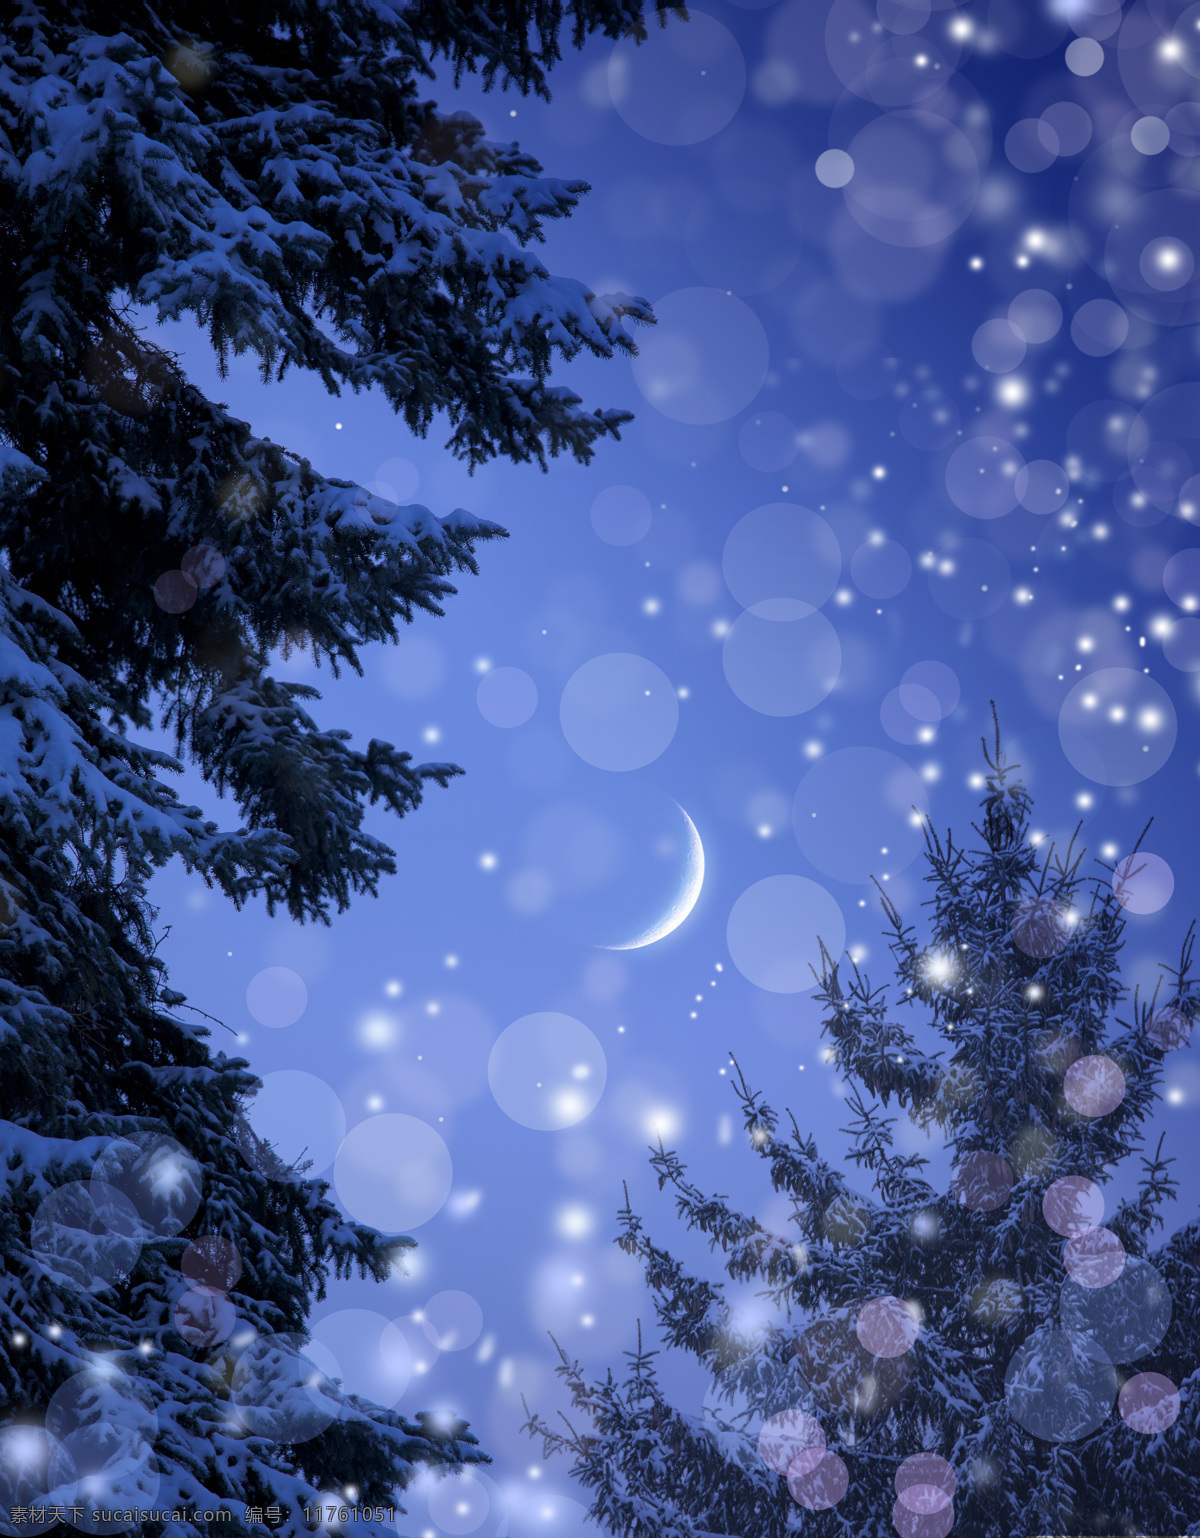 圣诞 夜 美景 圣诞夜 圣诞节 节日素材 圣诞之夜 夜景 夜晚 月亮 背景素材 美丽风景 圣诞树 光斑 光点 节日庆典 生活百科